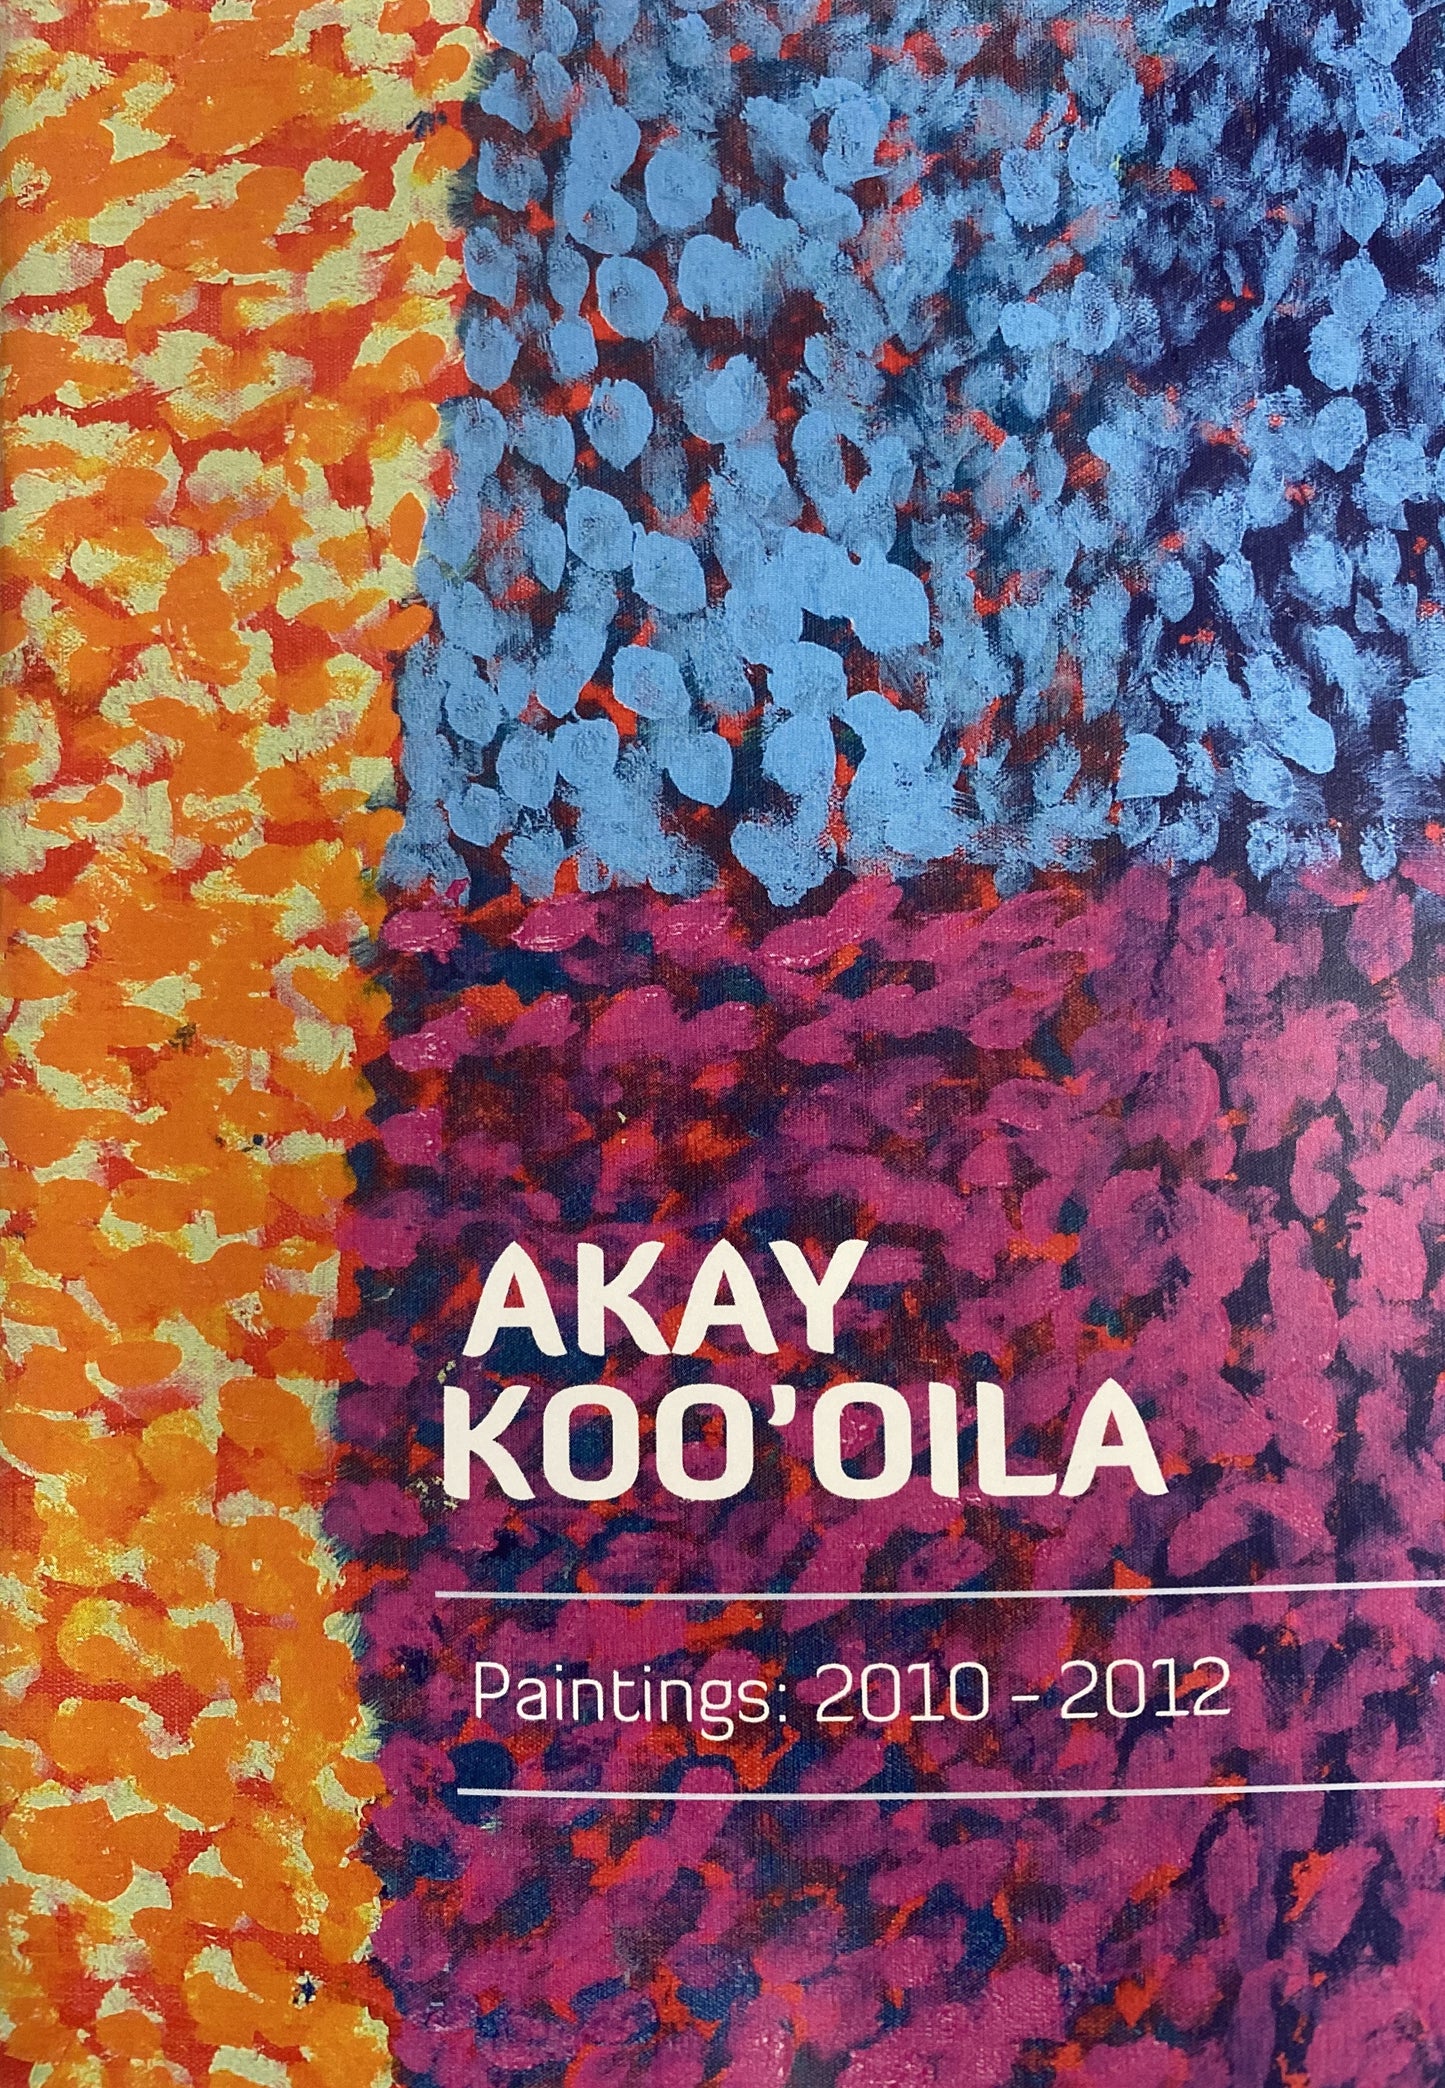 'Akay Koo'oila  'Paintings 2010-2012'